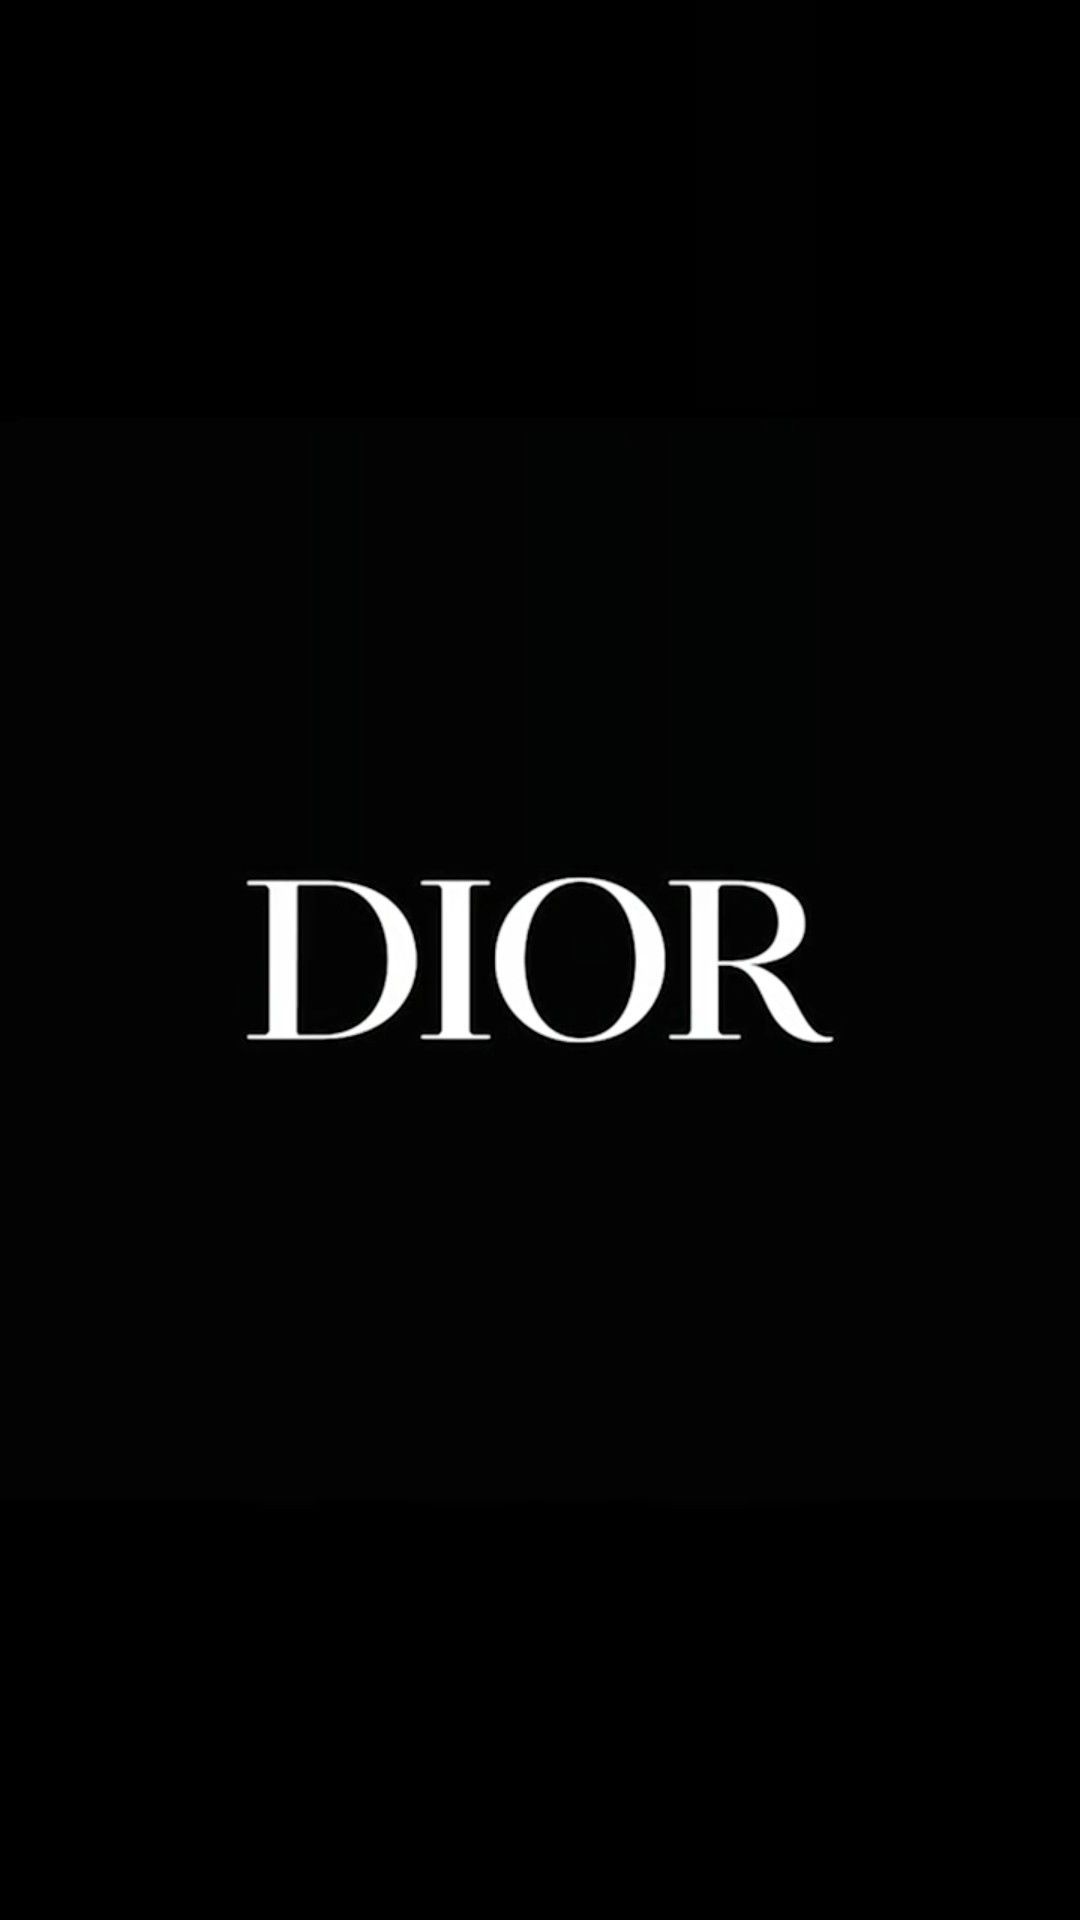 Bộ sưu tập hình nền Christian Dior chính là lời kể về một câu chuyện thần tiên, nơi đó vẻ đẹp và tinh tế đi đôi với nhau. Hãy đắm chìm trong không gian tuyệt đẹp của thương hiệu danh tiếng này và cùng khám phá những điều hấp dẫn.